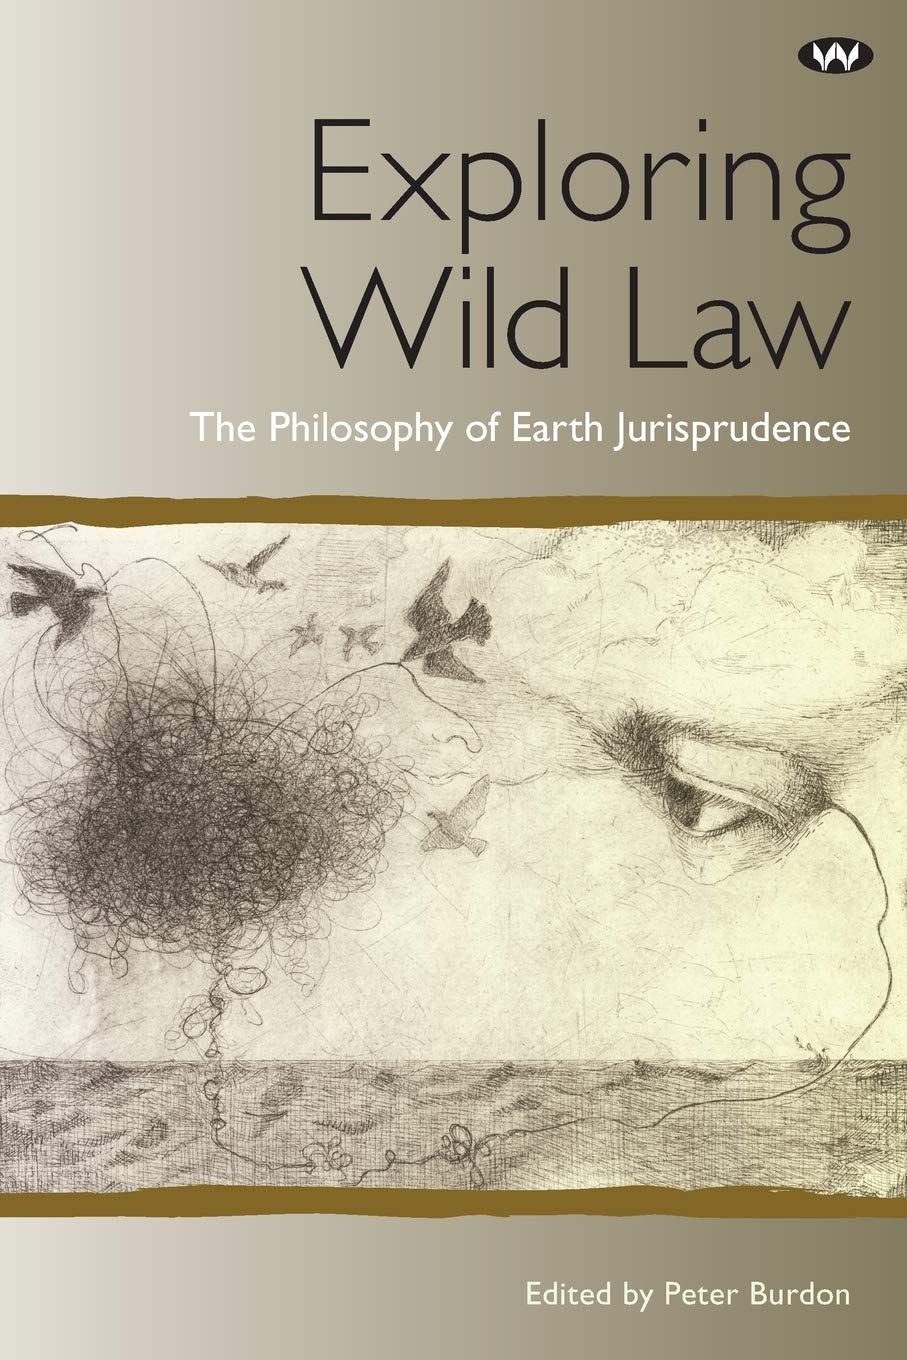 Exploration du droit sauvage, la philosophie de la jurisprudence terrestre